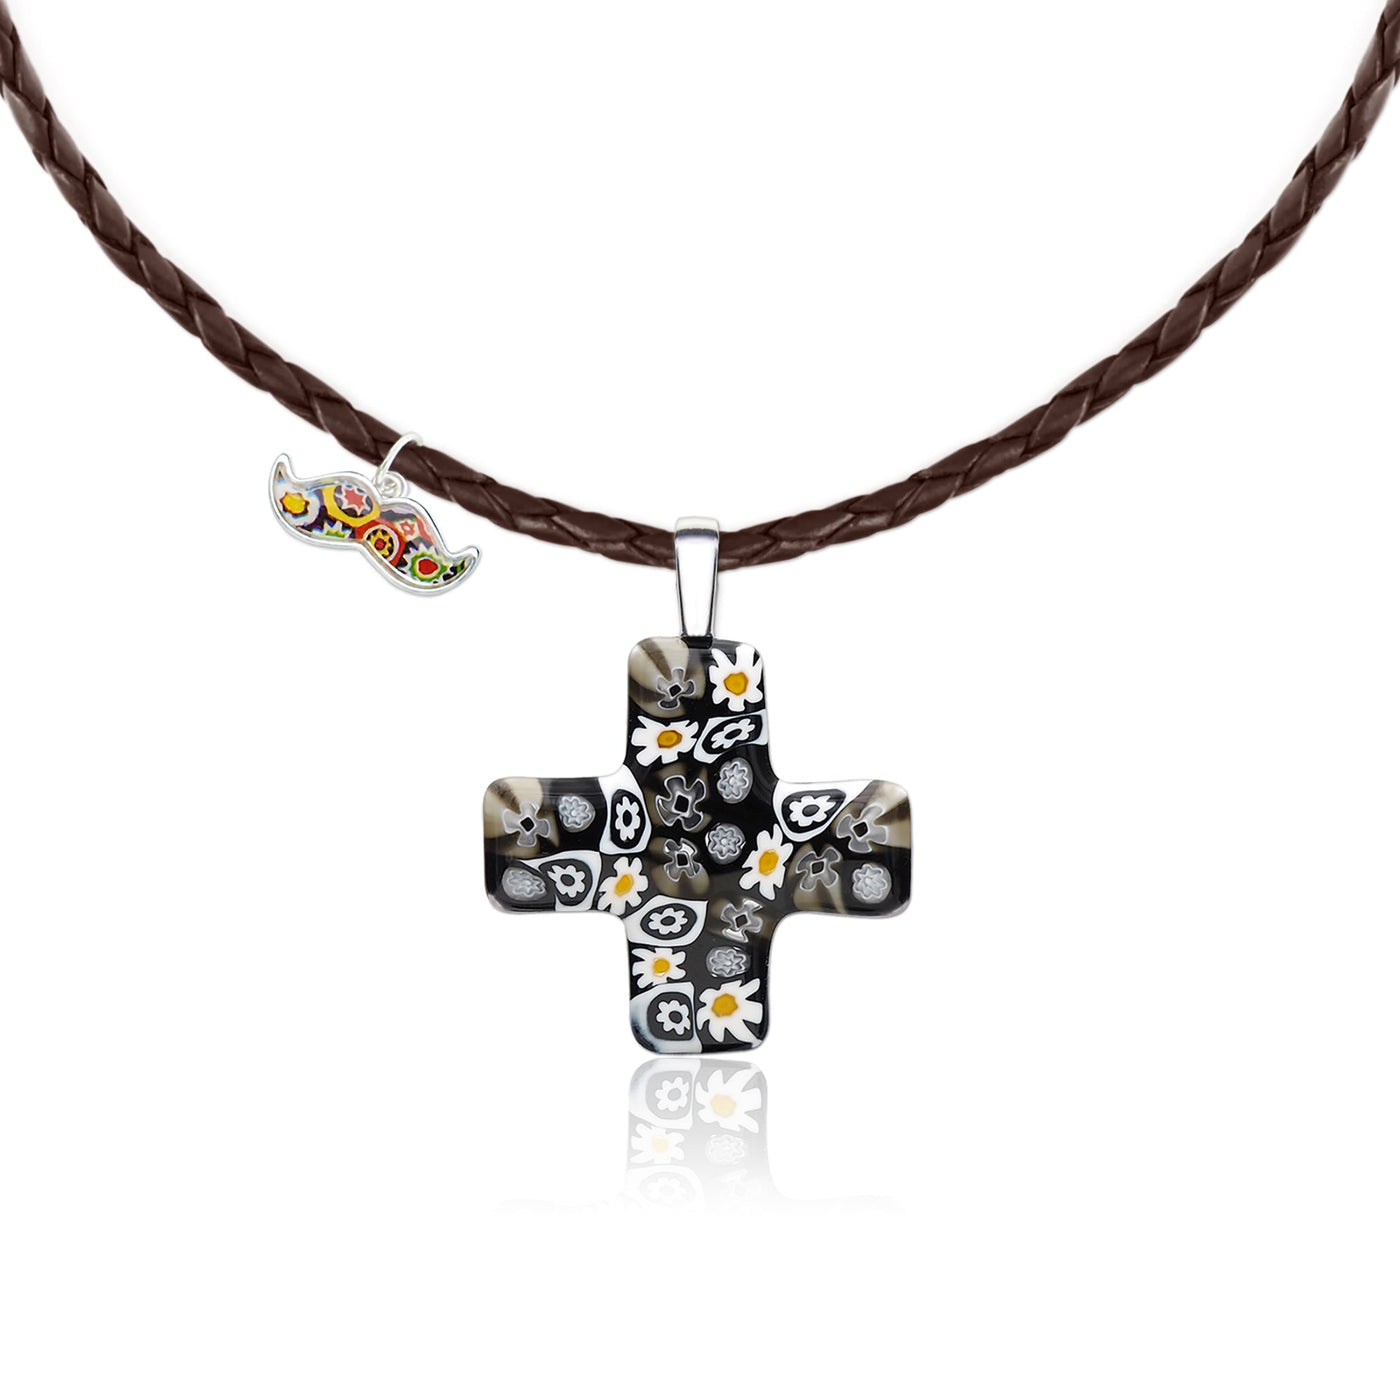 Artylish x Cross 希臘十字架頸鏈 - 黑色 皮革頸鏈 - 吊墜頸鏈